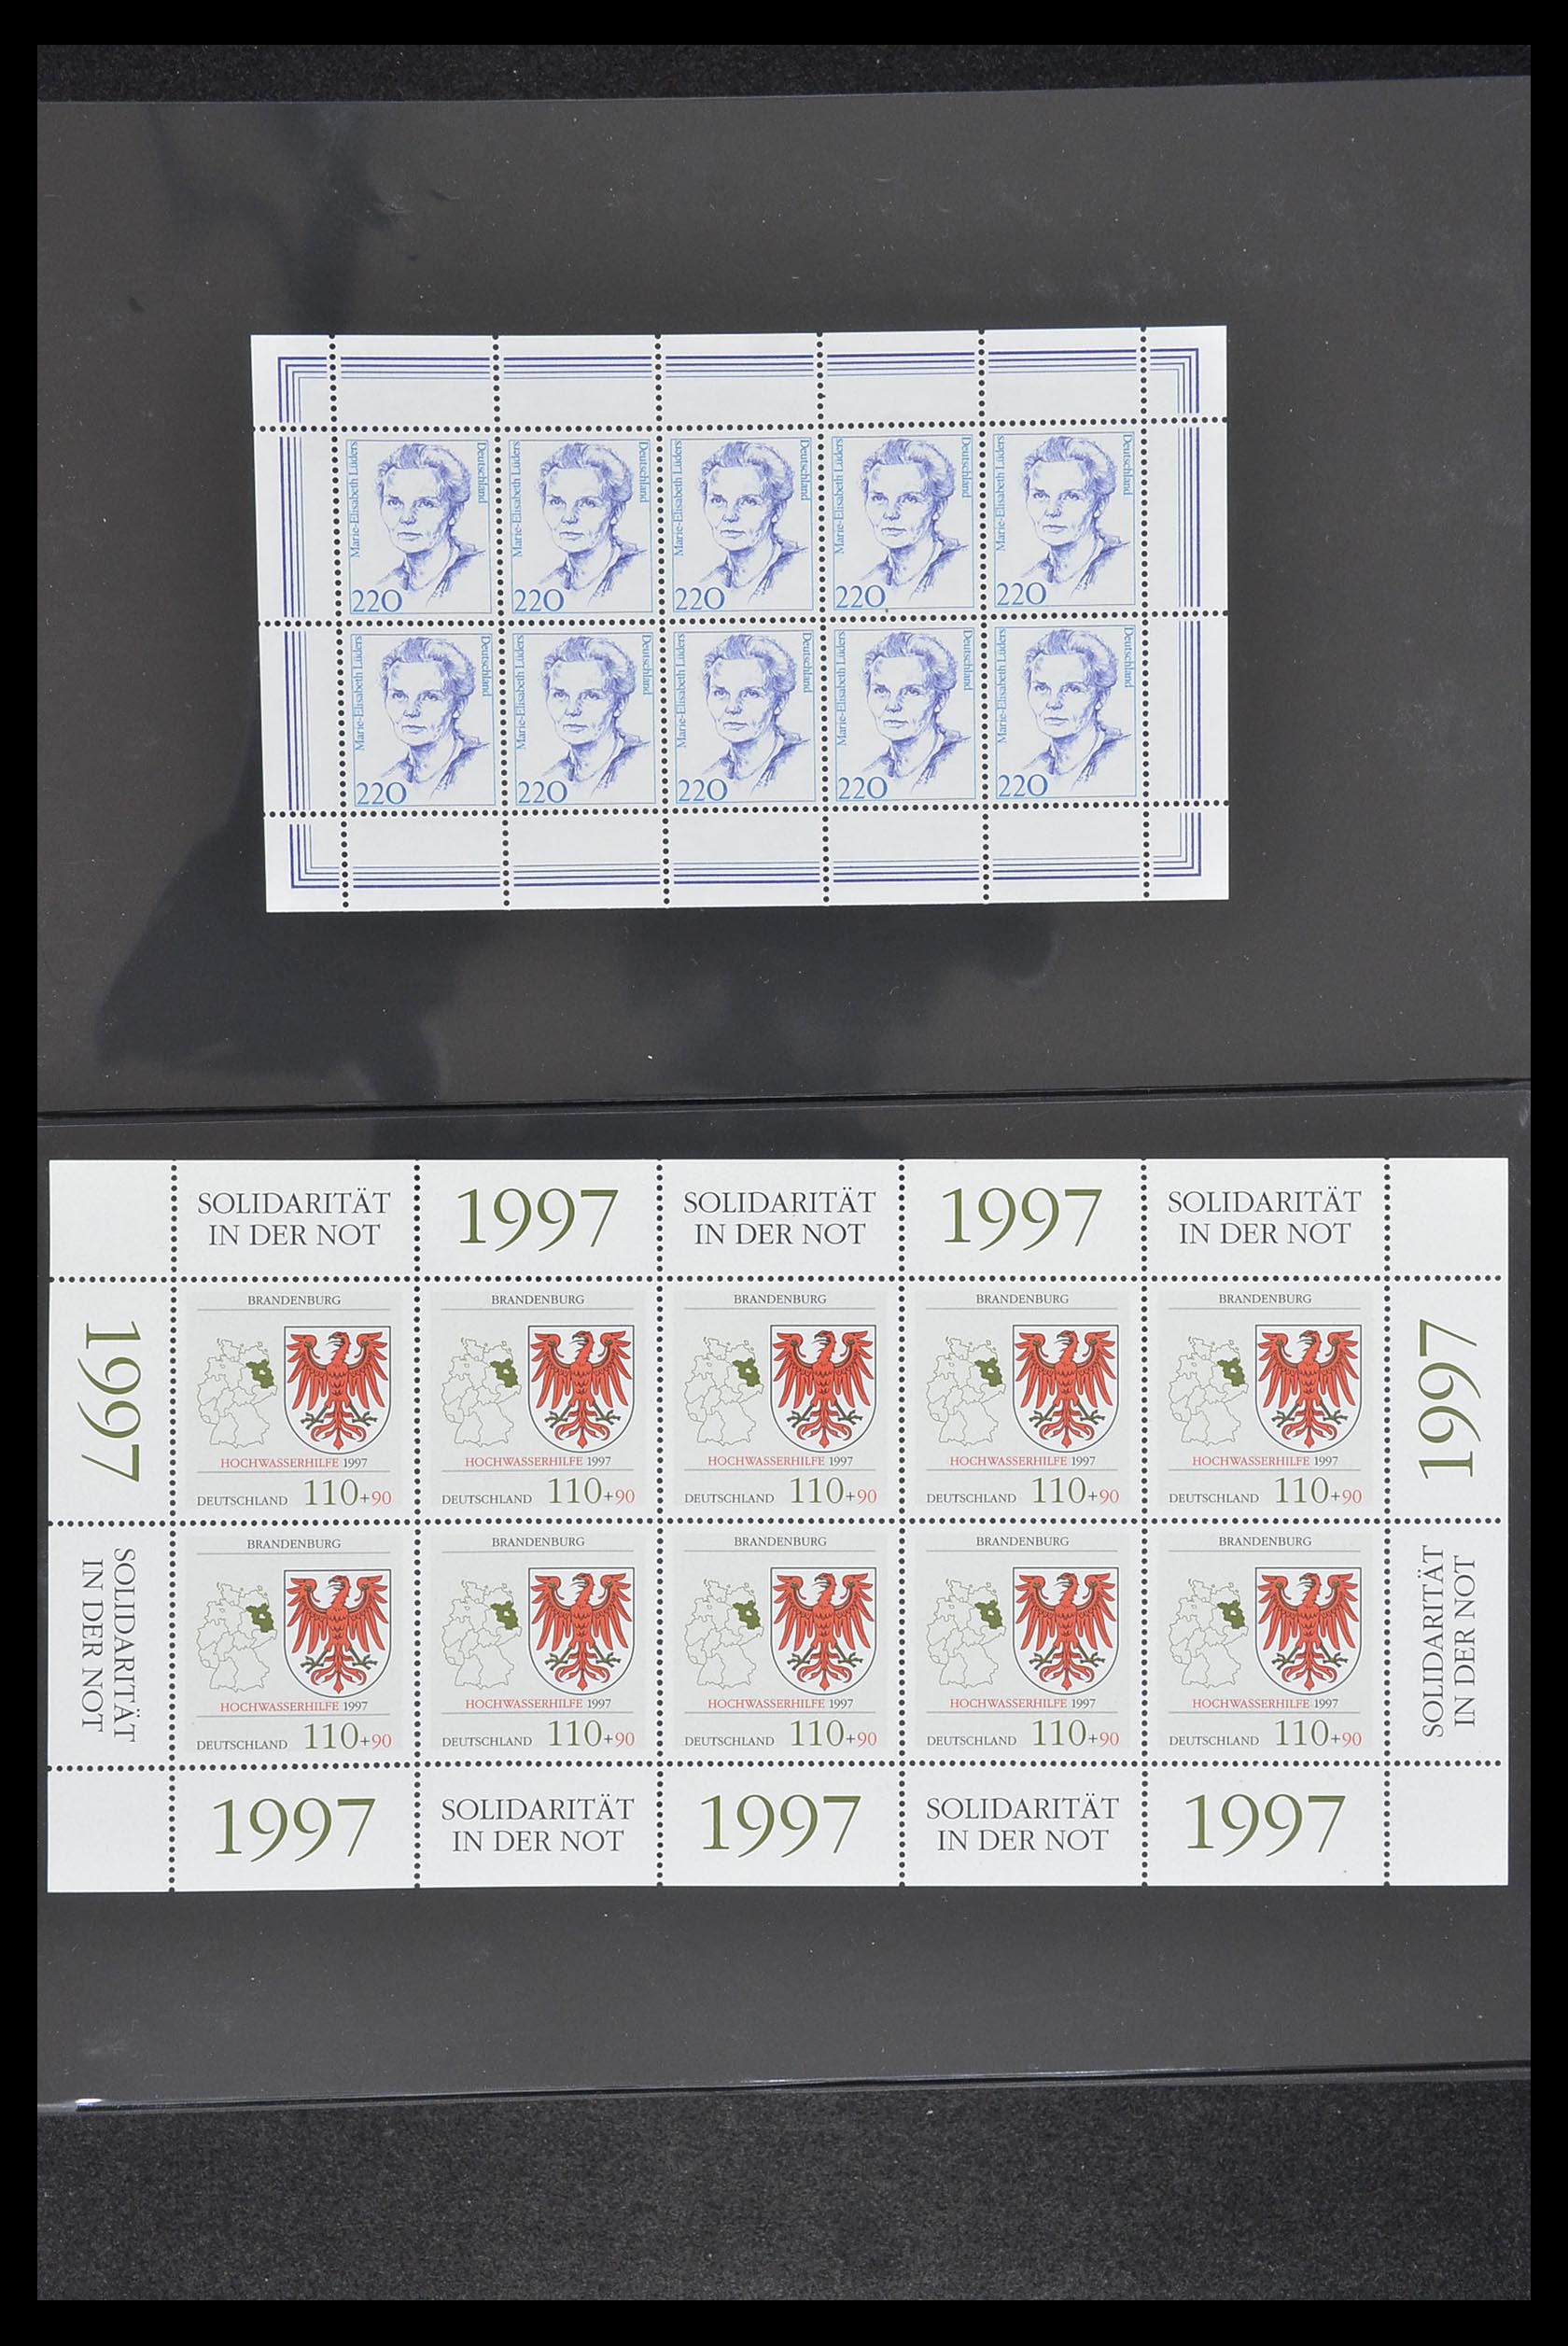 33936 082 - Stamp collection 33936 Bundespost kleinbogen 1994-2000.